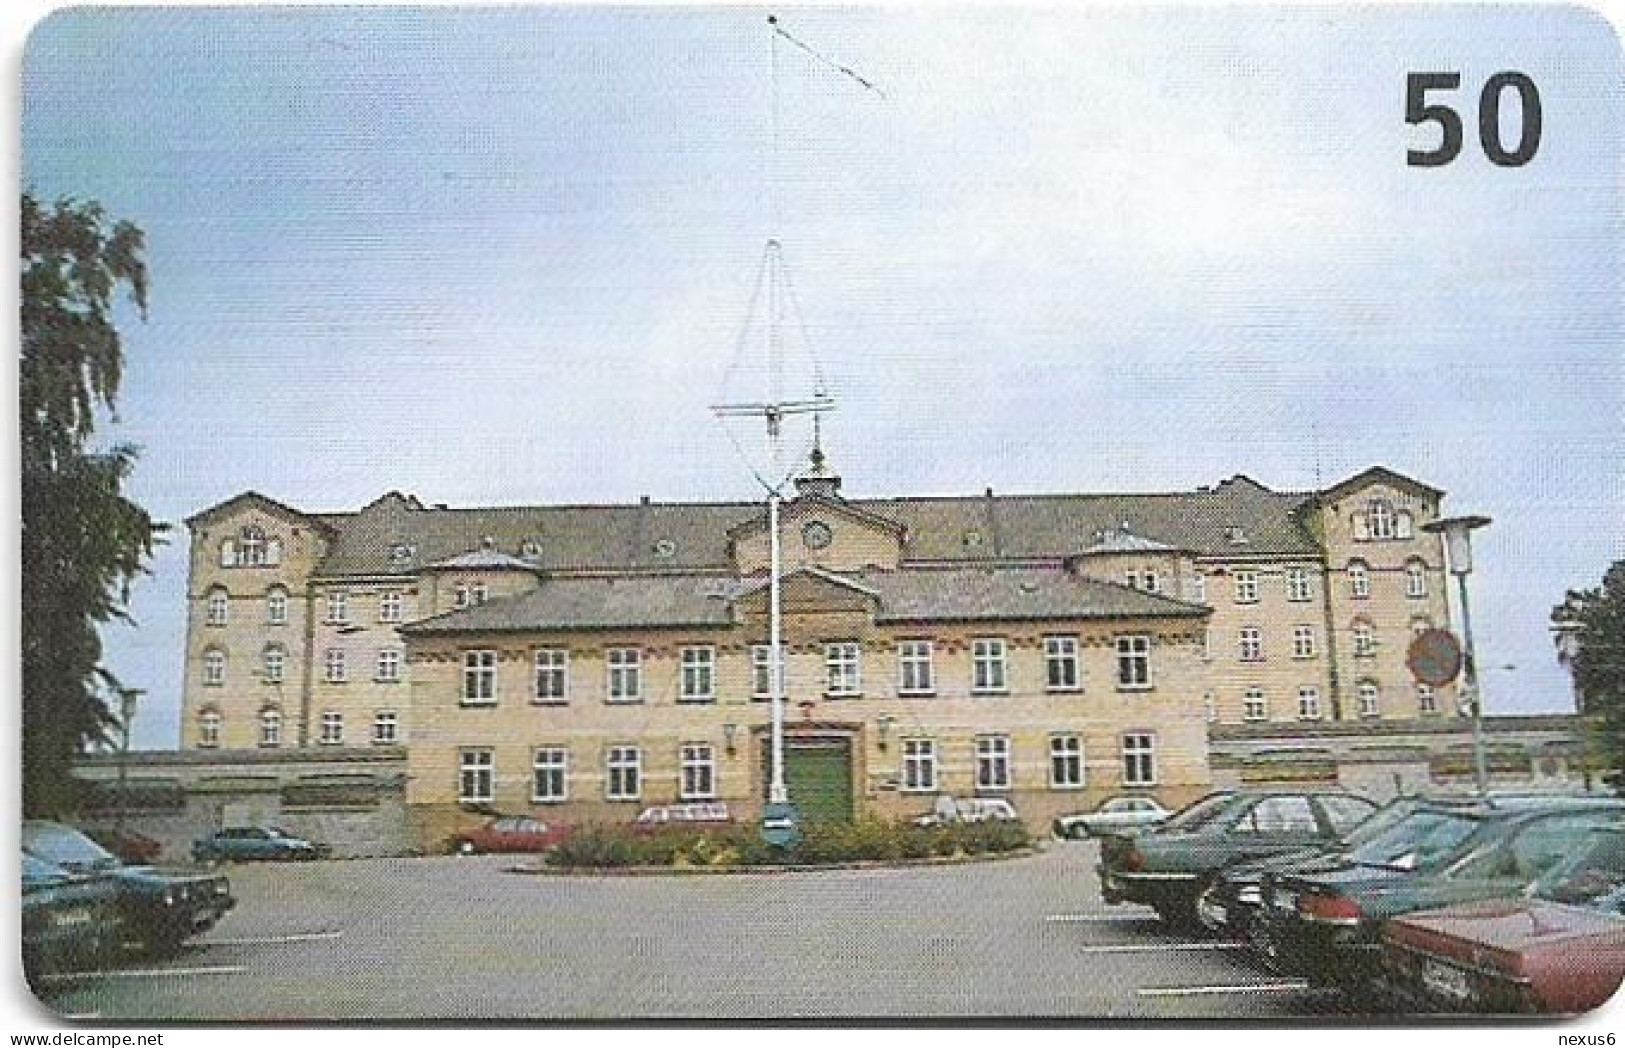 Denmark - Tele Danmark (chip) - Horsens State Prison (Cn.3101) - TDR036C - 04.2003, 50kr, 8.000ex, Used - Denmark